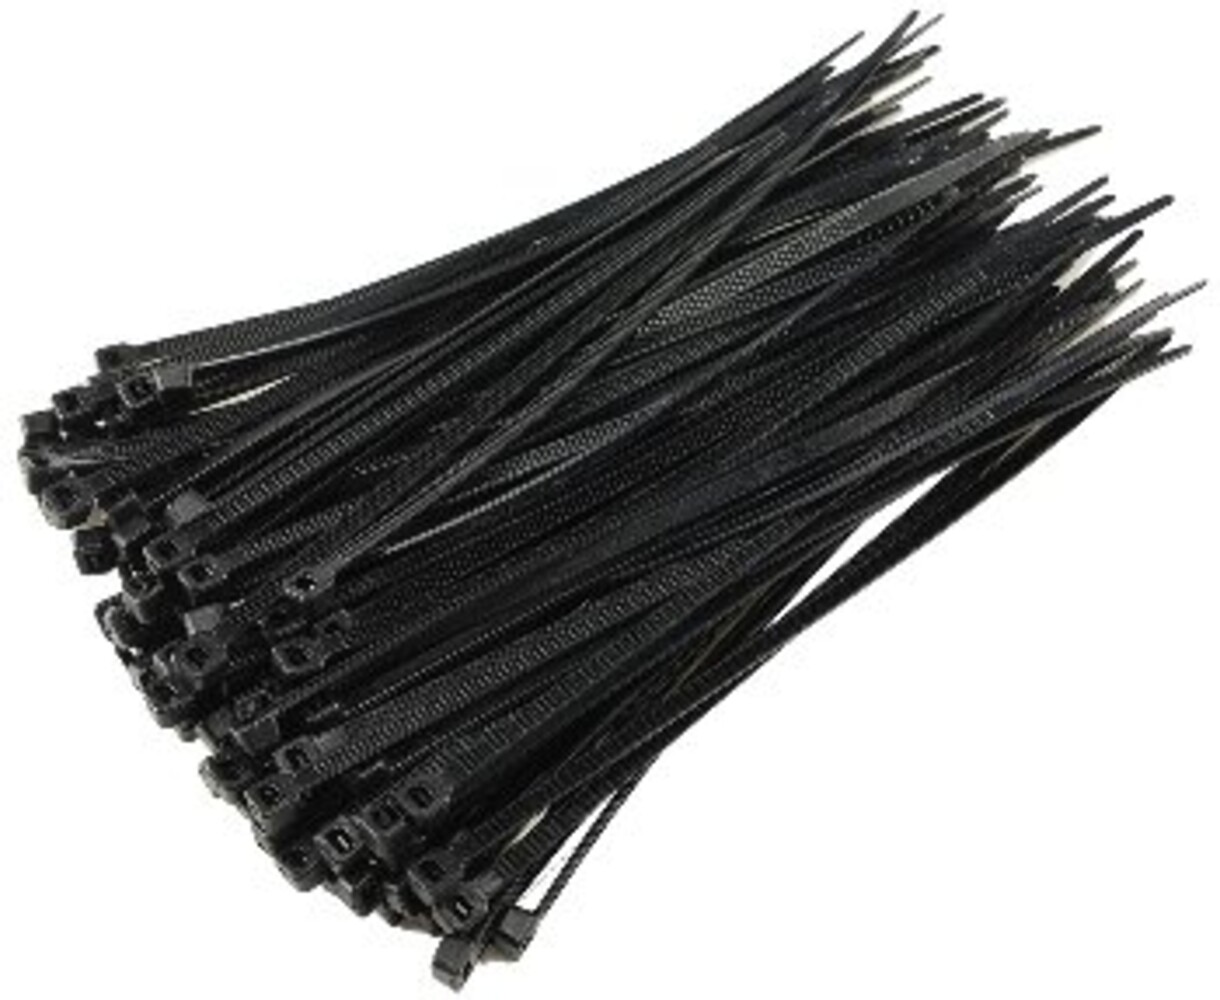 Stark belastbare schwarze Kabelbinder der Marke ChiliTec mit hoher Zugkraft und UV-Beständigkeit